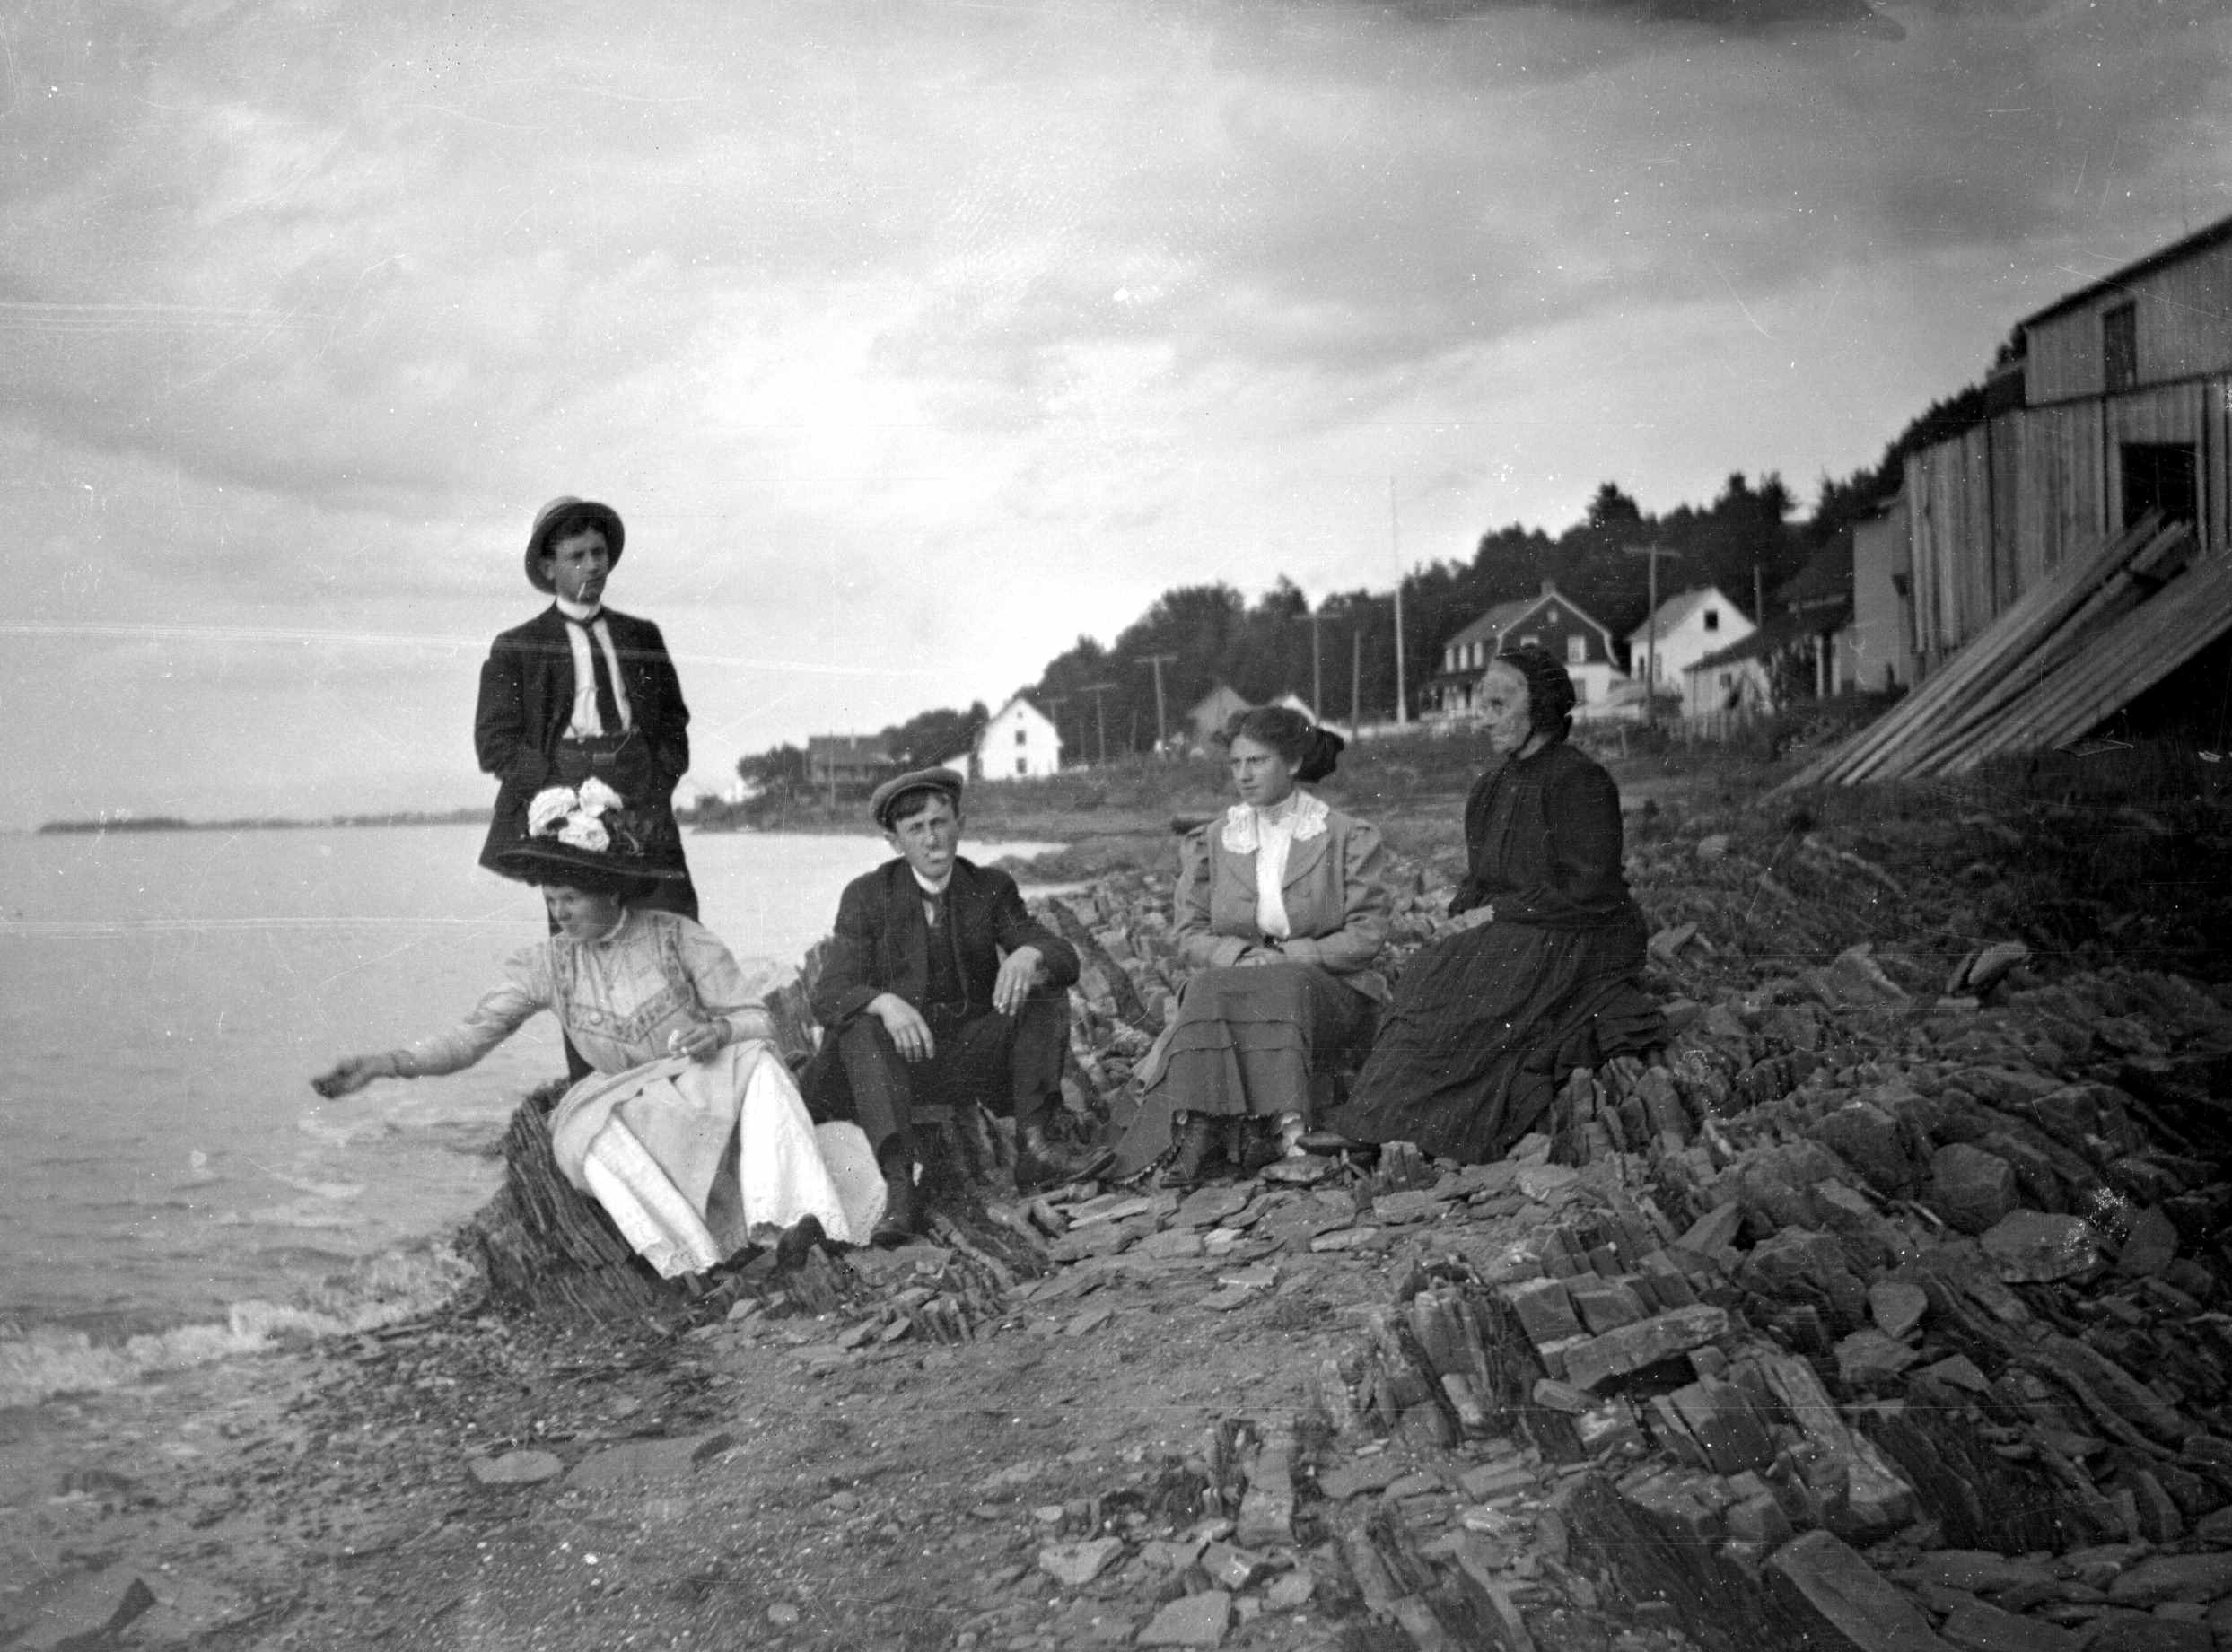 Cinq adultes, dont une dame âgée, posent sur une plage très rocheuse. Une femme semble lancer du pain à un oiseau hors champ.